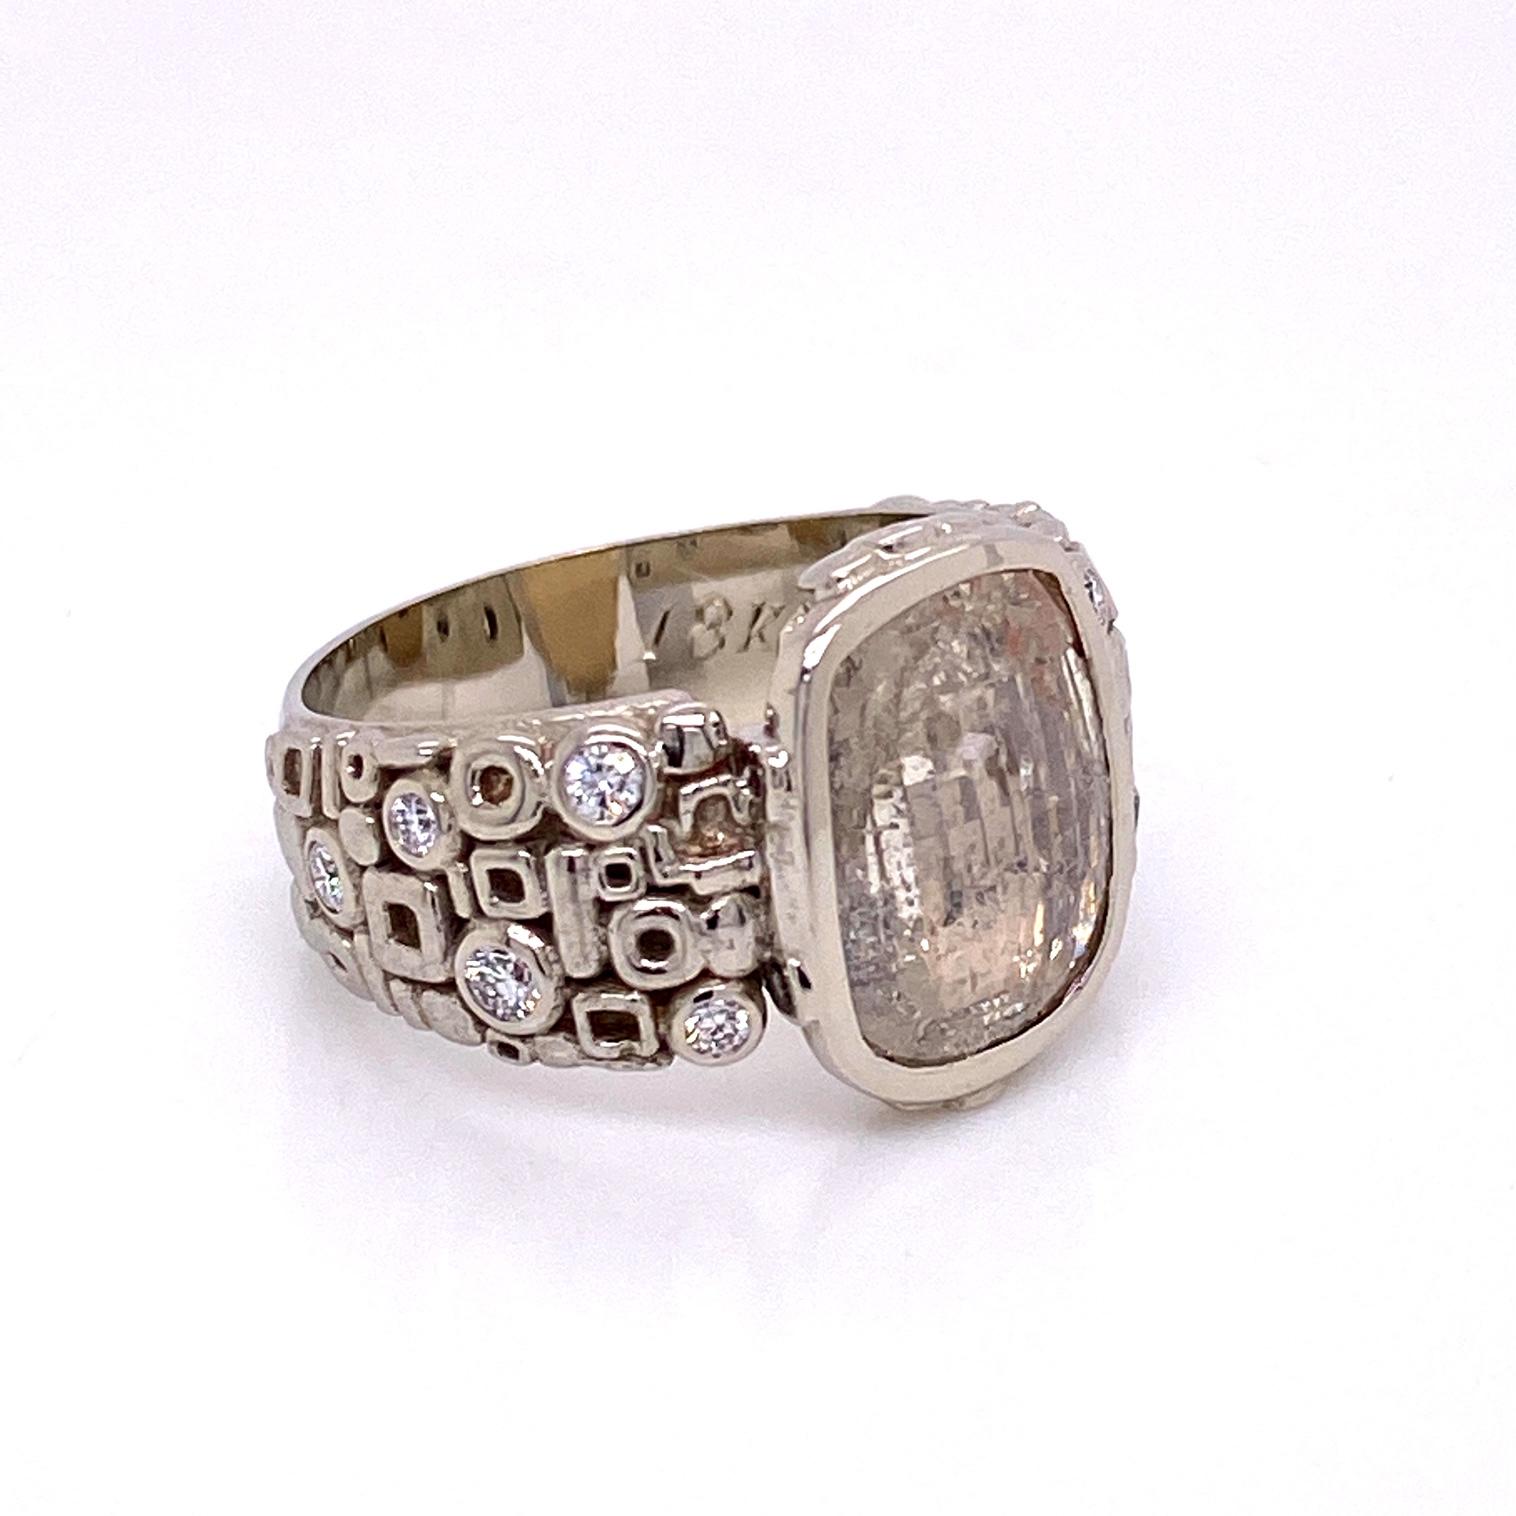 Ein 18k Weißgold geometrischen Muster Ring mit einem 2,41ct Rose geschnittenen Diamanten und .166 Gesamtkarat Gewicht von F Farbe VS Klarheit brillanten runden Diamanten geschnitten. Ringgröße 6,25. Dieser Ring wurde von llyn strong entworfen und